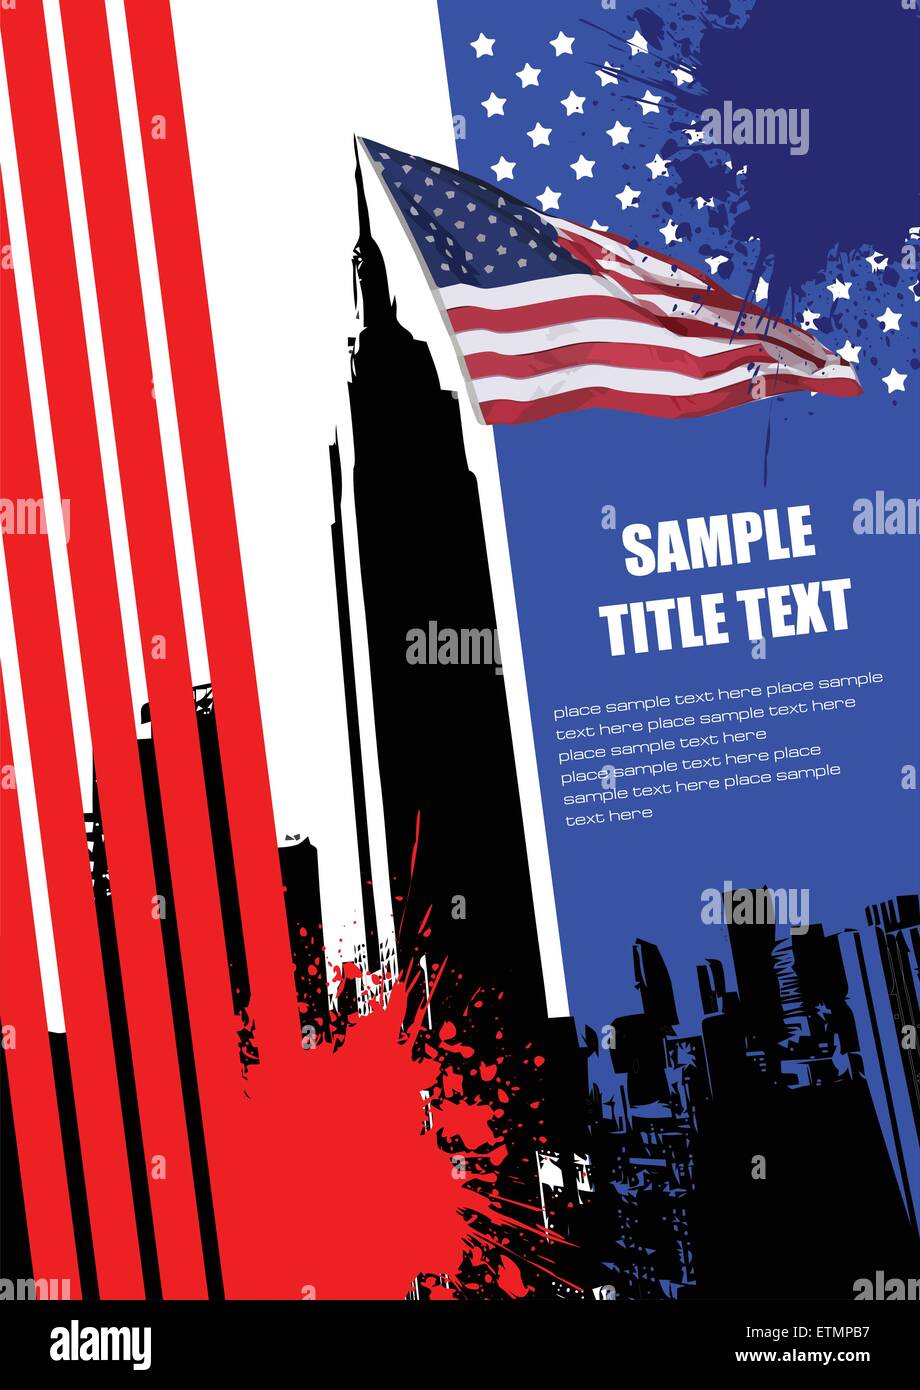 Abdeckung für Broschüre mit Bild der USA und amerikanische Flagge Stock Vektor